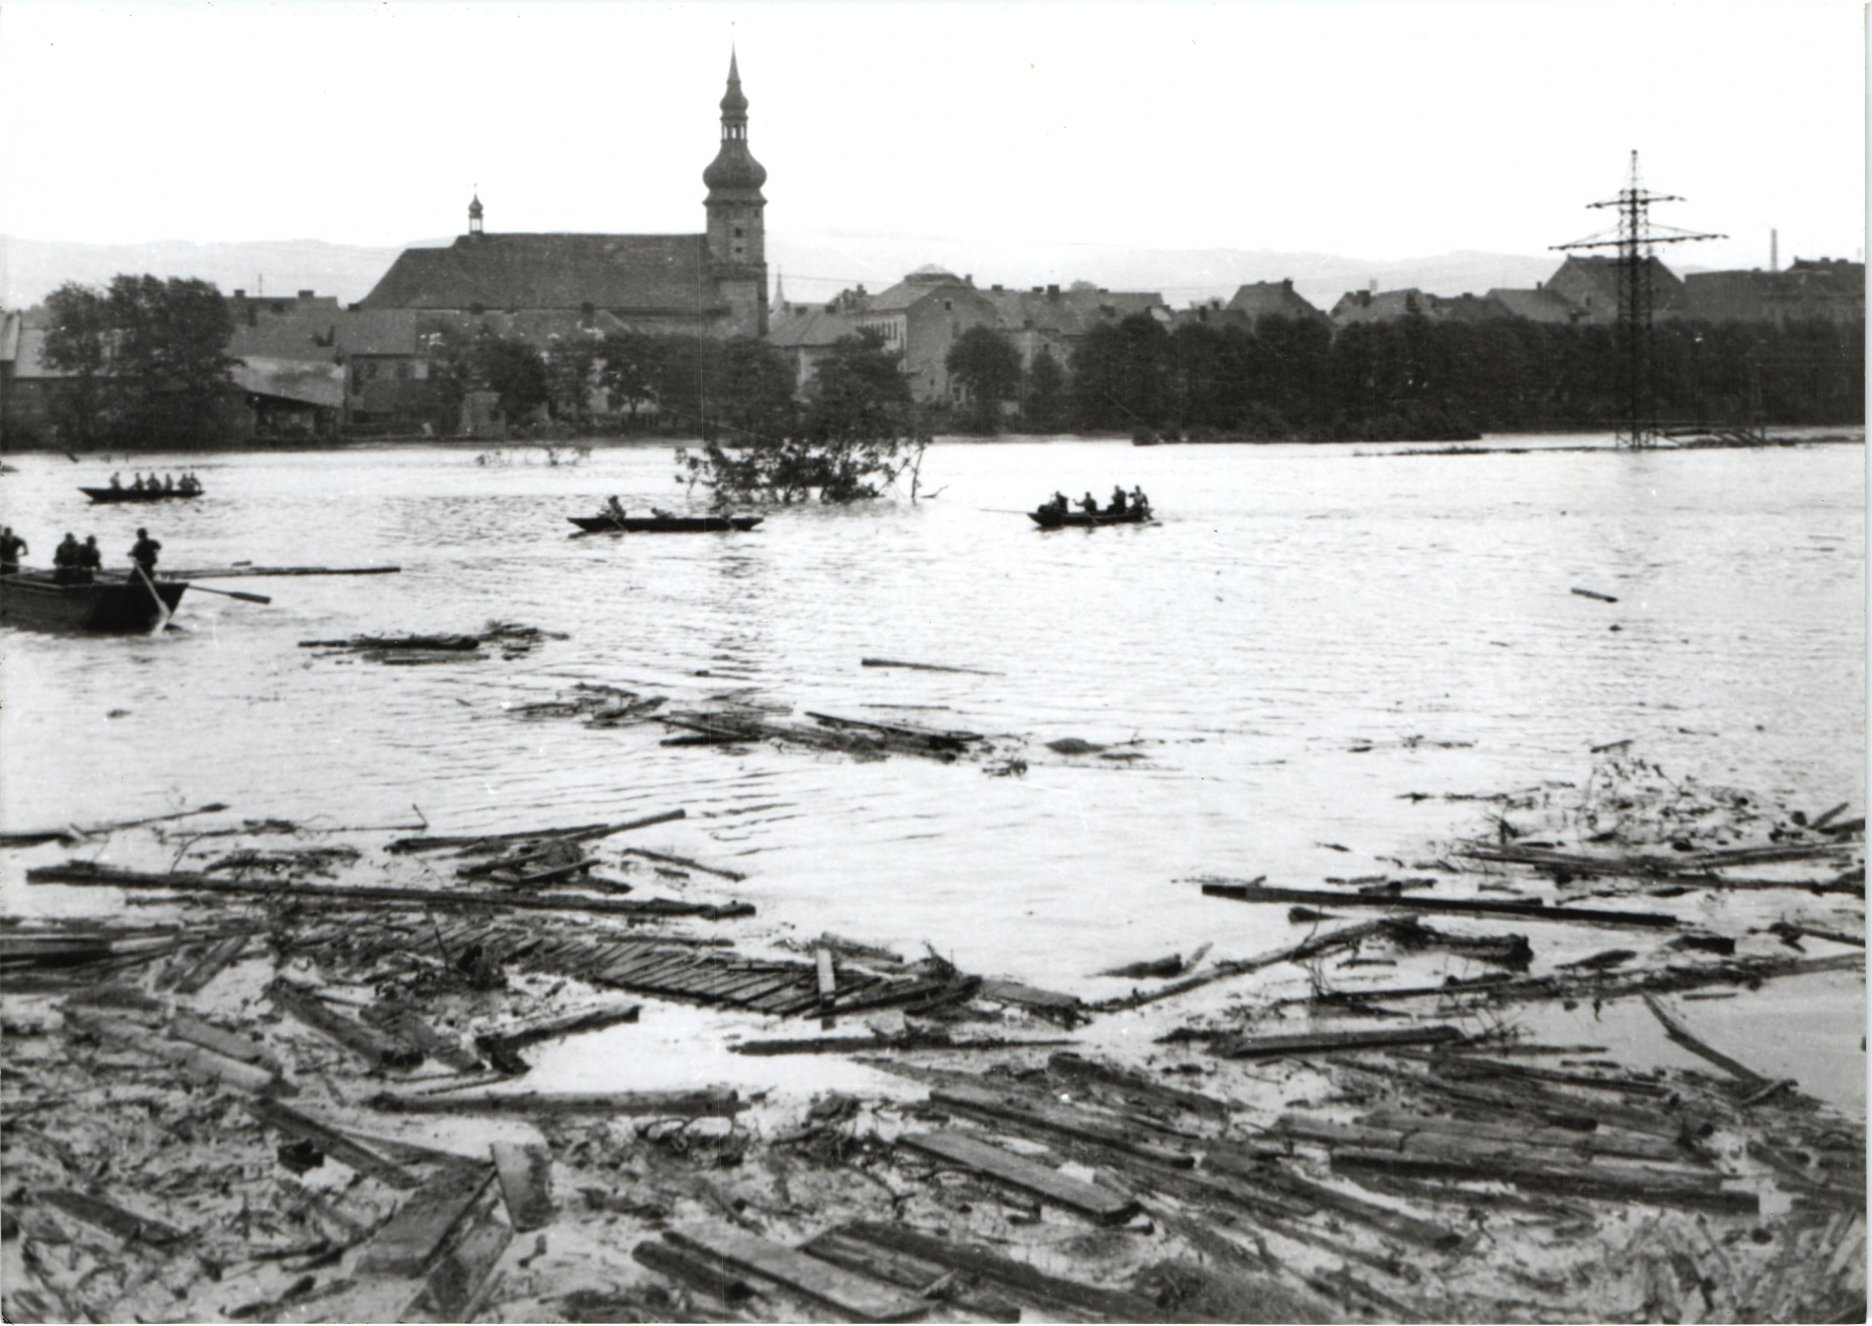 V roku 1954 došlo v dôsledku dlhodobých dažďov k jeho pretrhnutiu ochranného piliera lomu Medard a jeho následnej záplave vodou z rieky Ohře. Autor fotografie je pravdepodobne dnes už zosnulý sokolovský fotograf Milan Petřík. Zdroj: Archív Vladislav Podracký